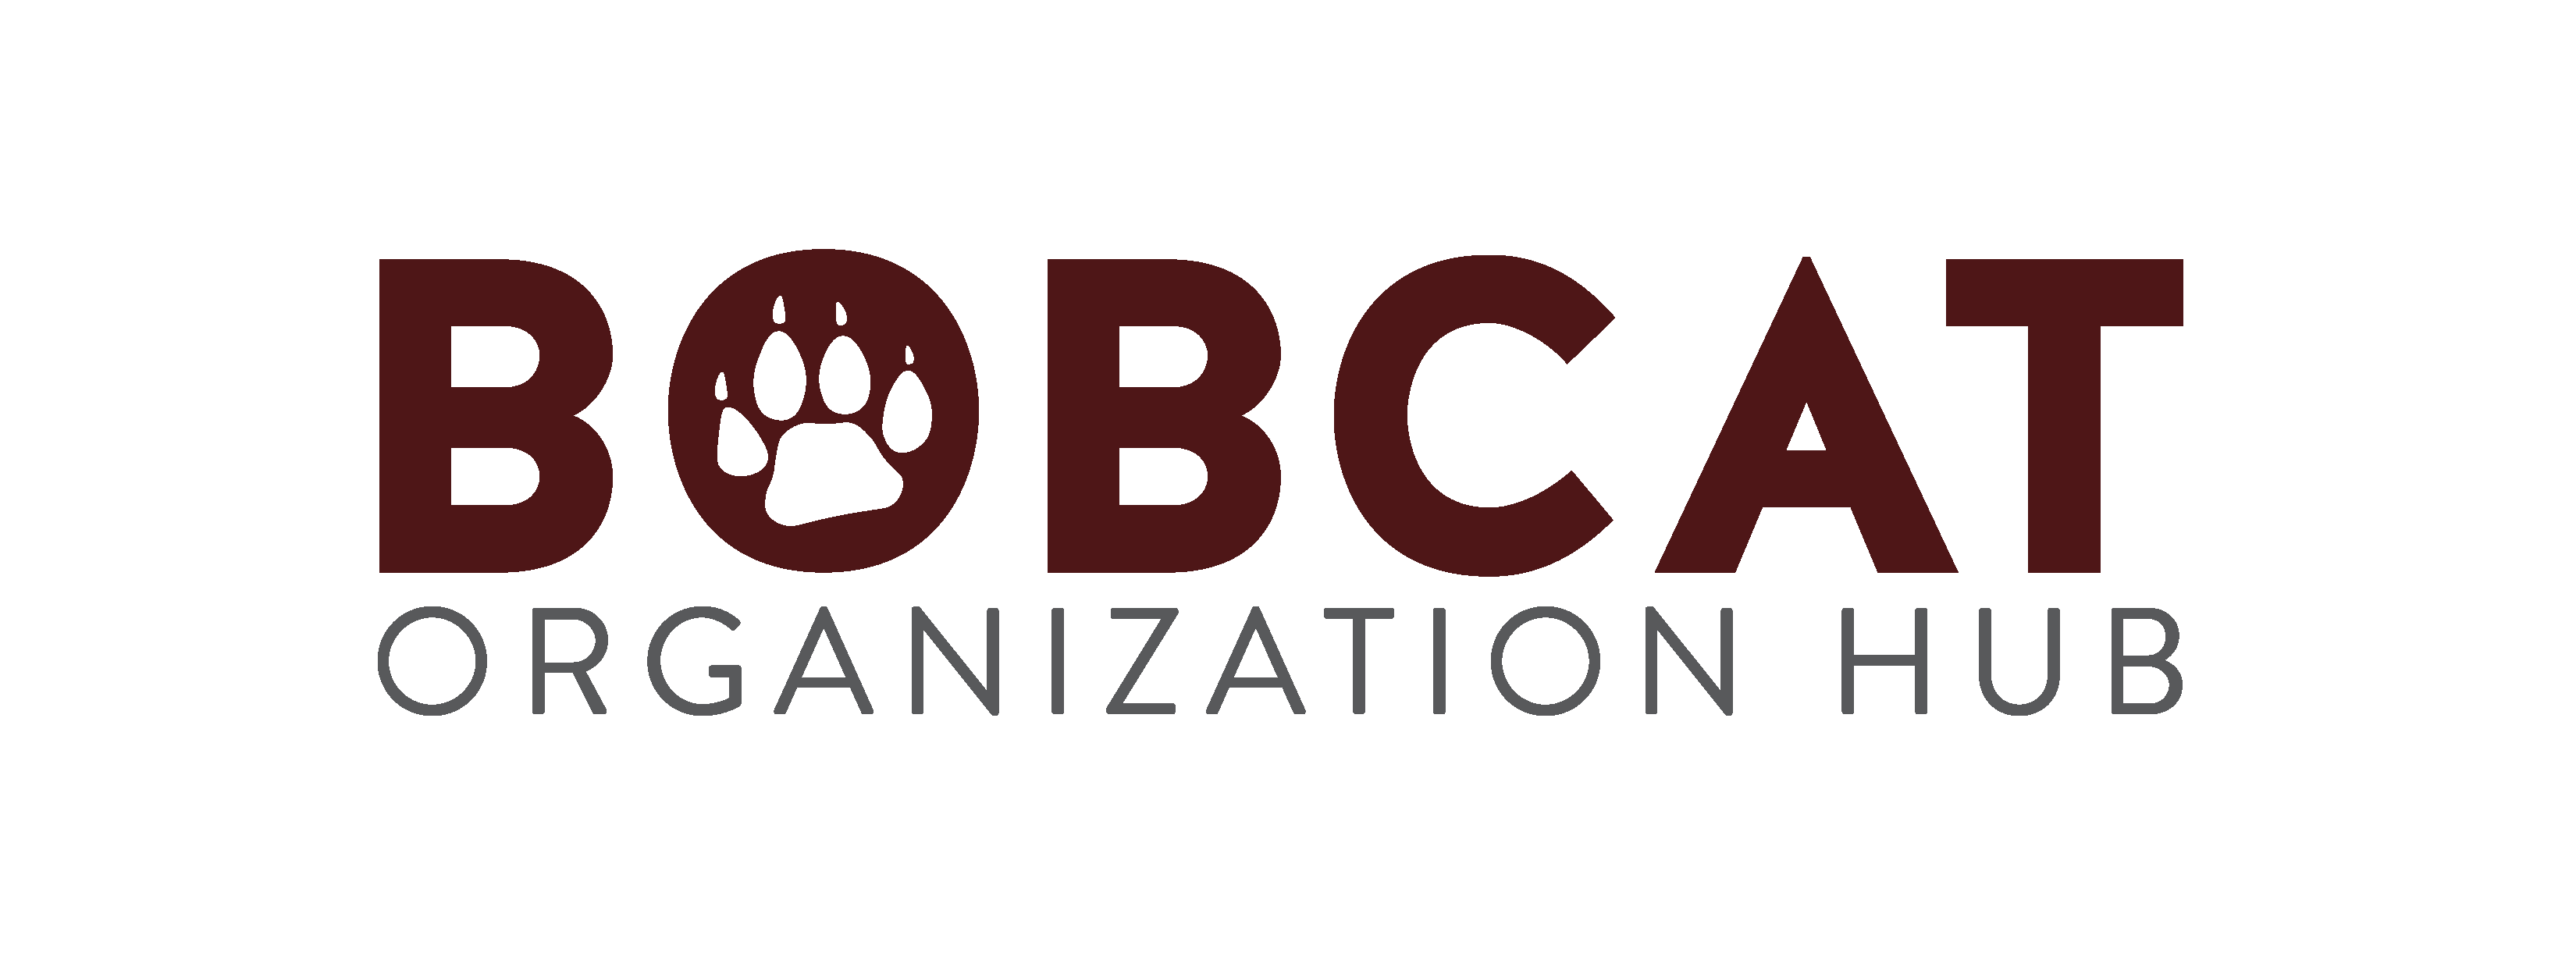 Bobcat Organization Hub - Logo